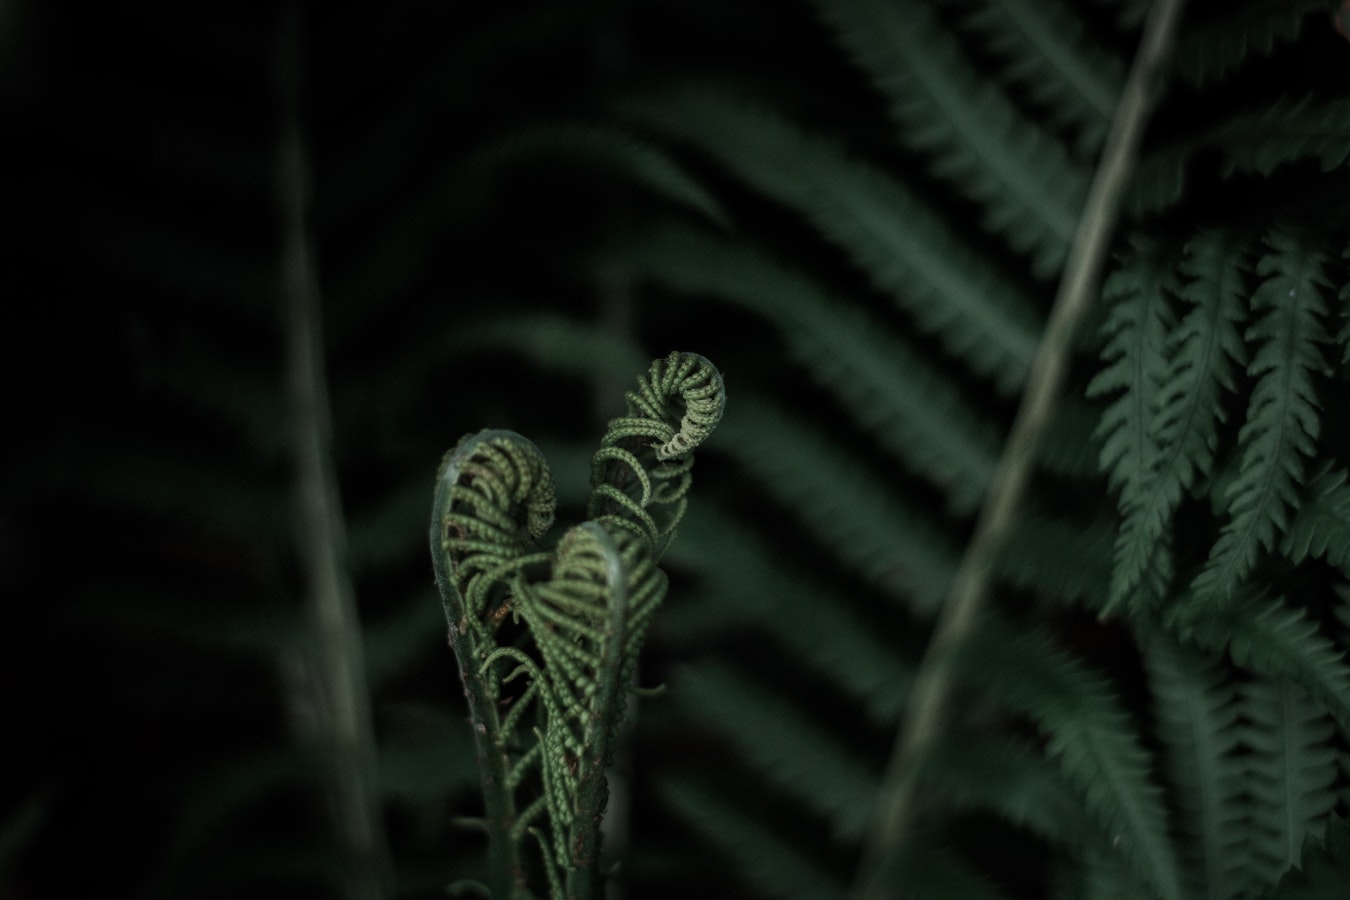 A closeup of an emerging ponga frond